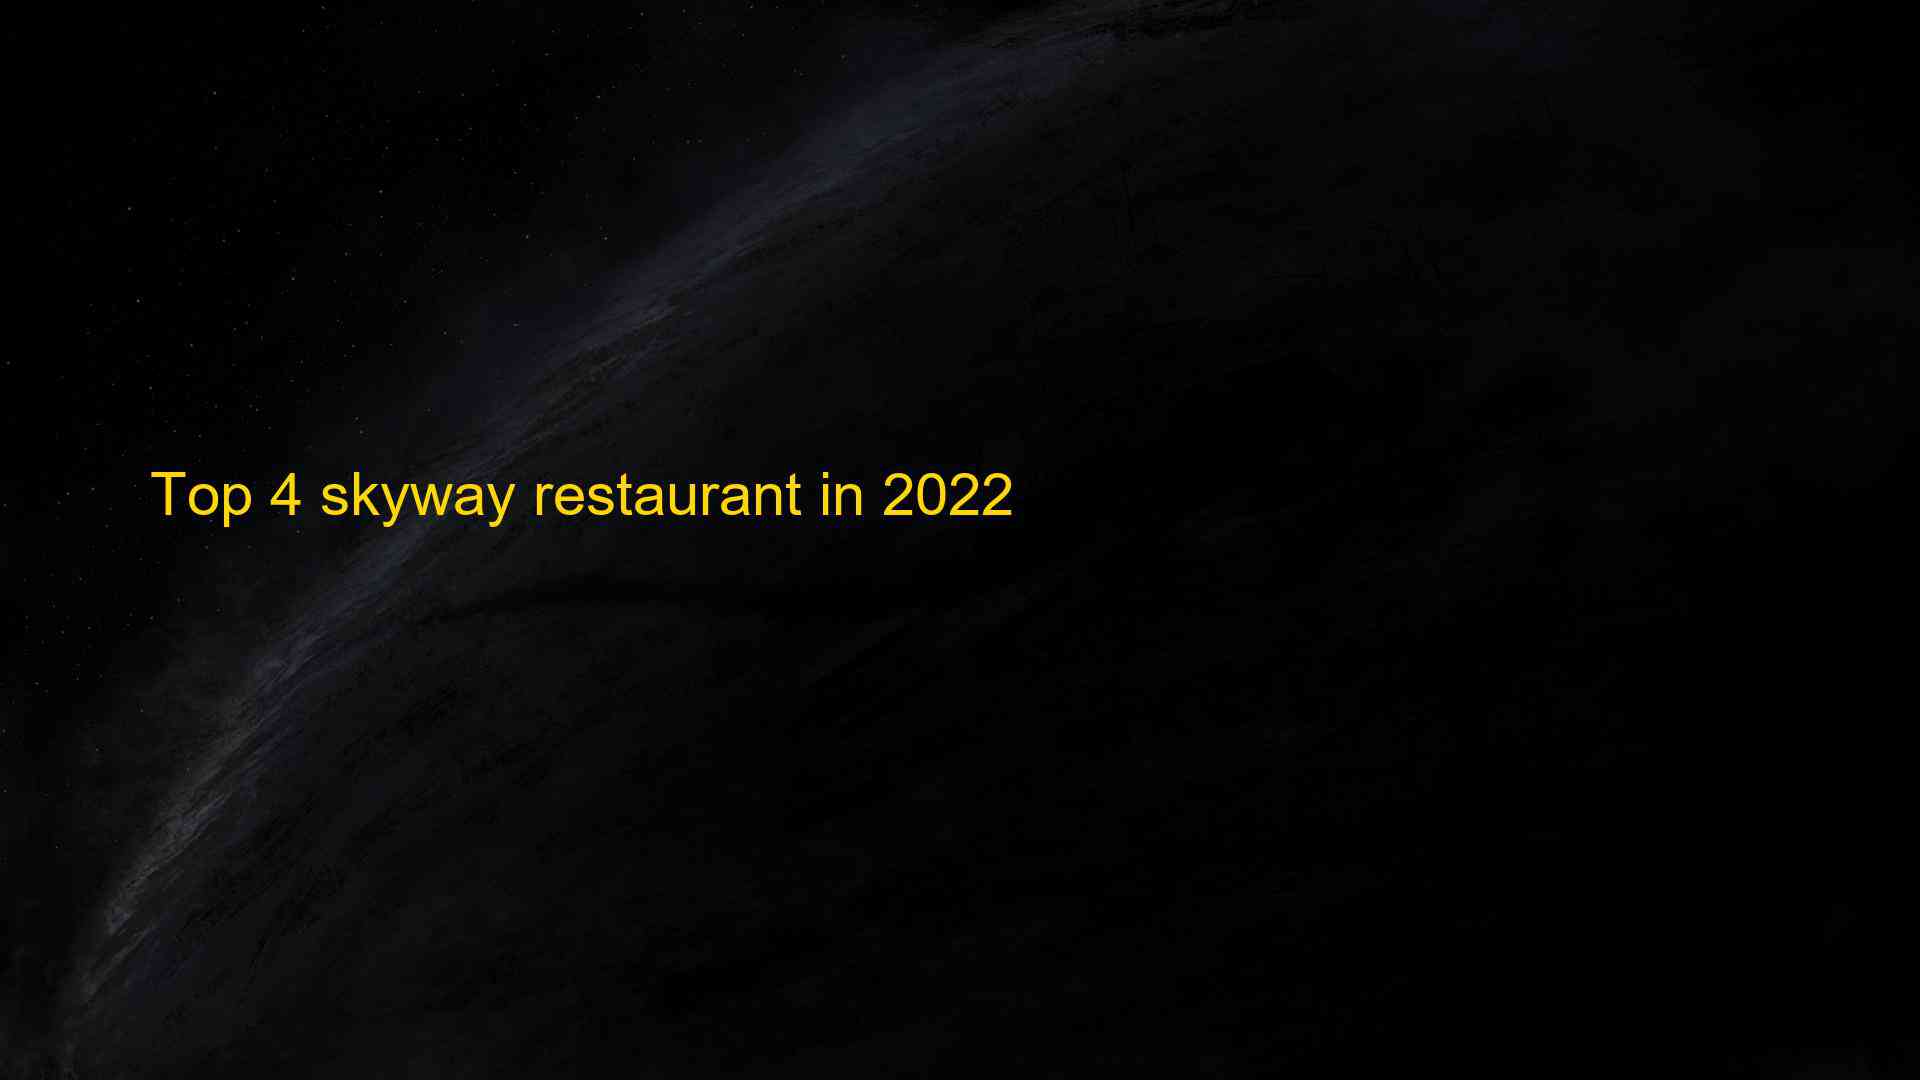 Top 4 skyway restaurant in 2022 1663386321